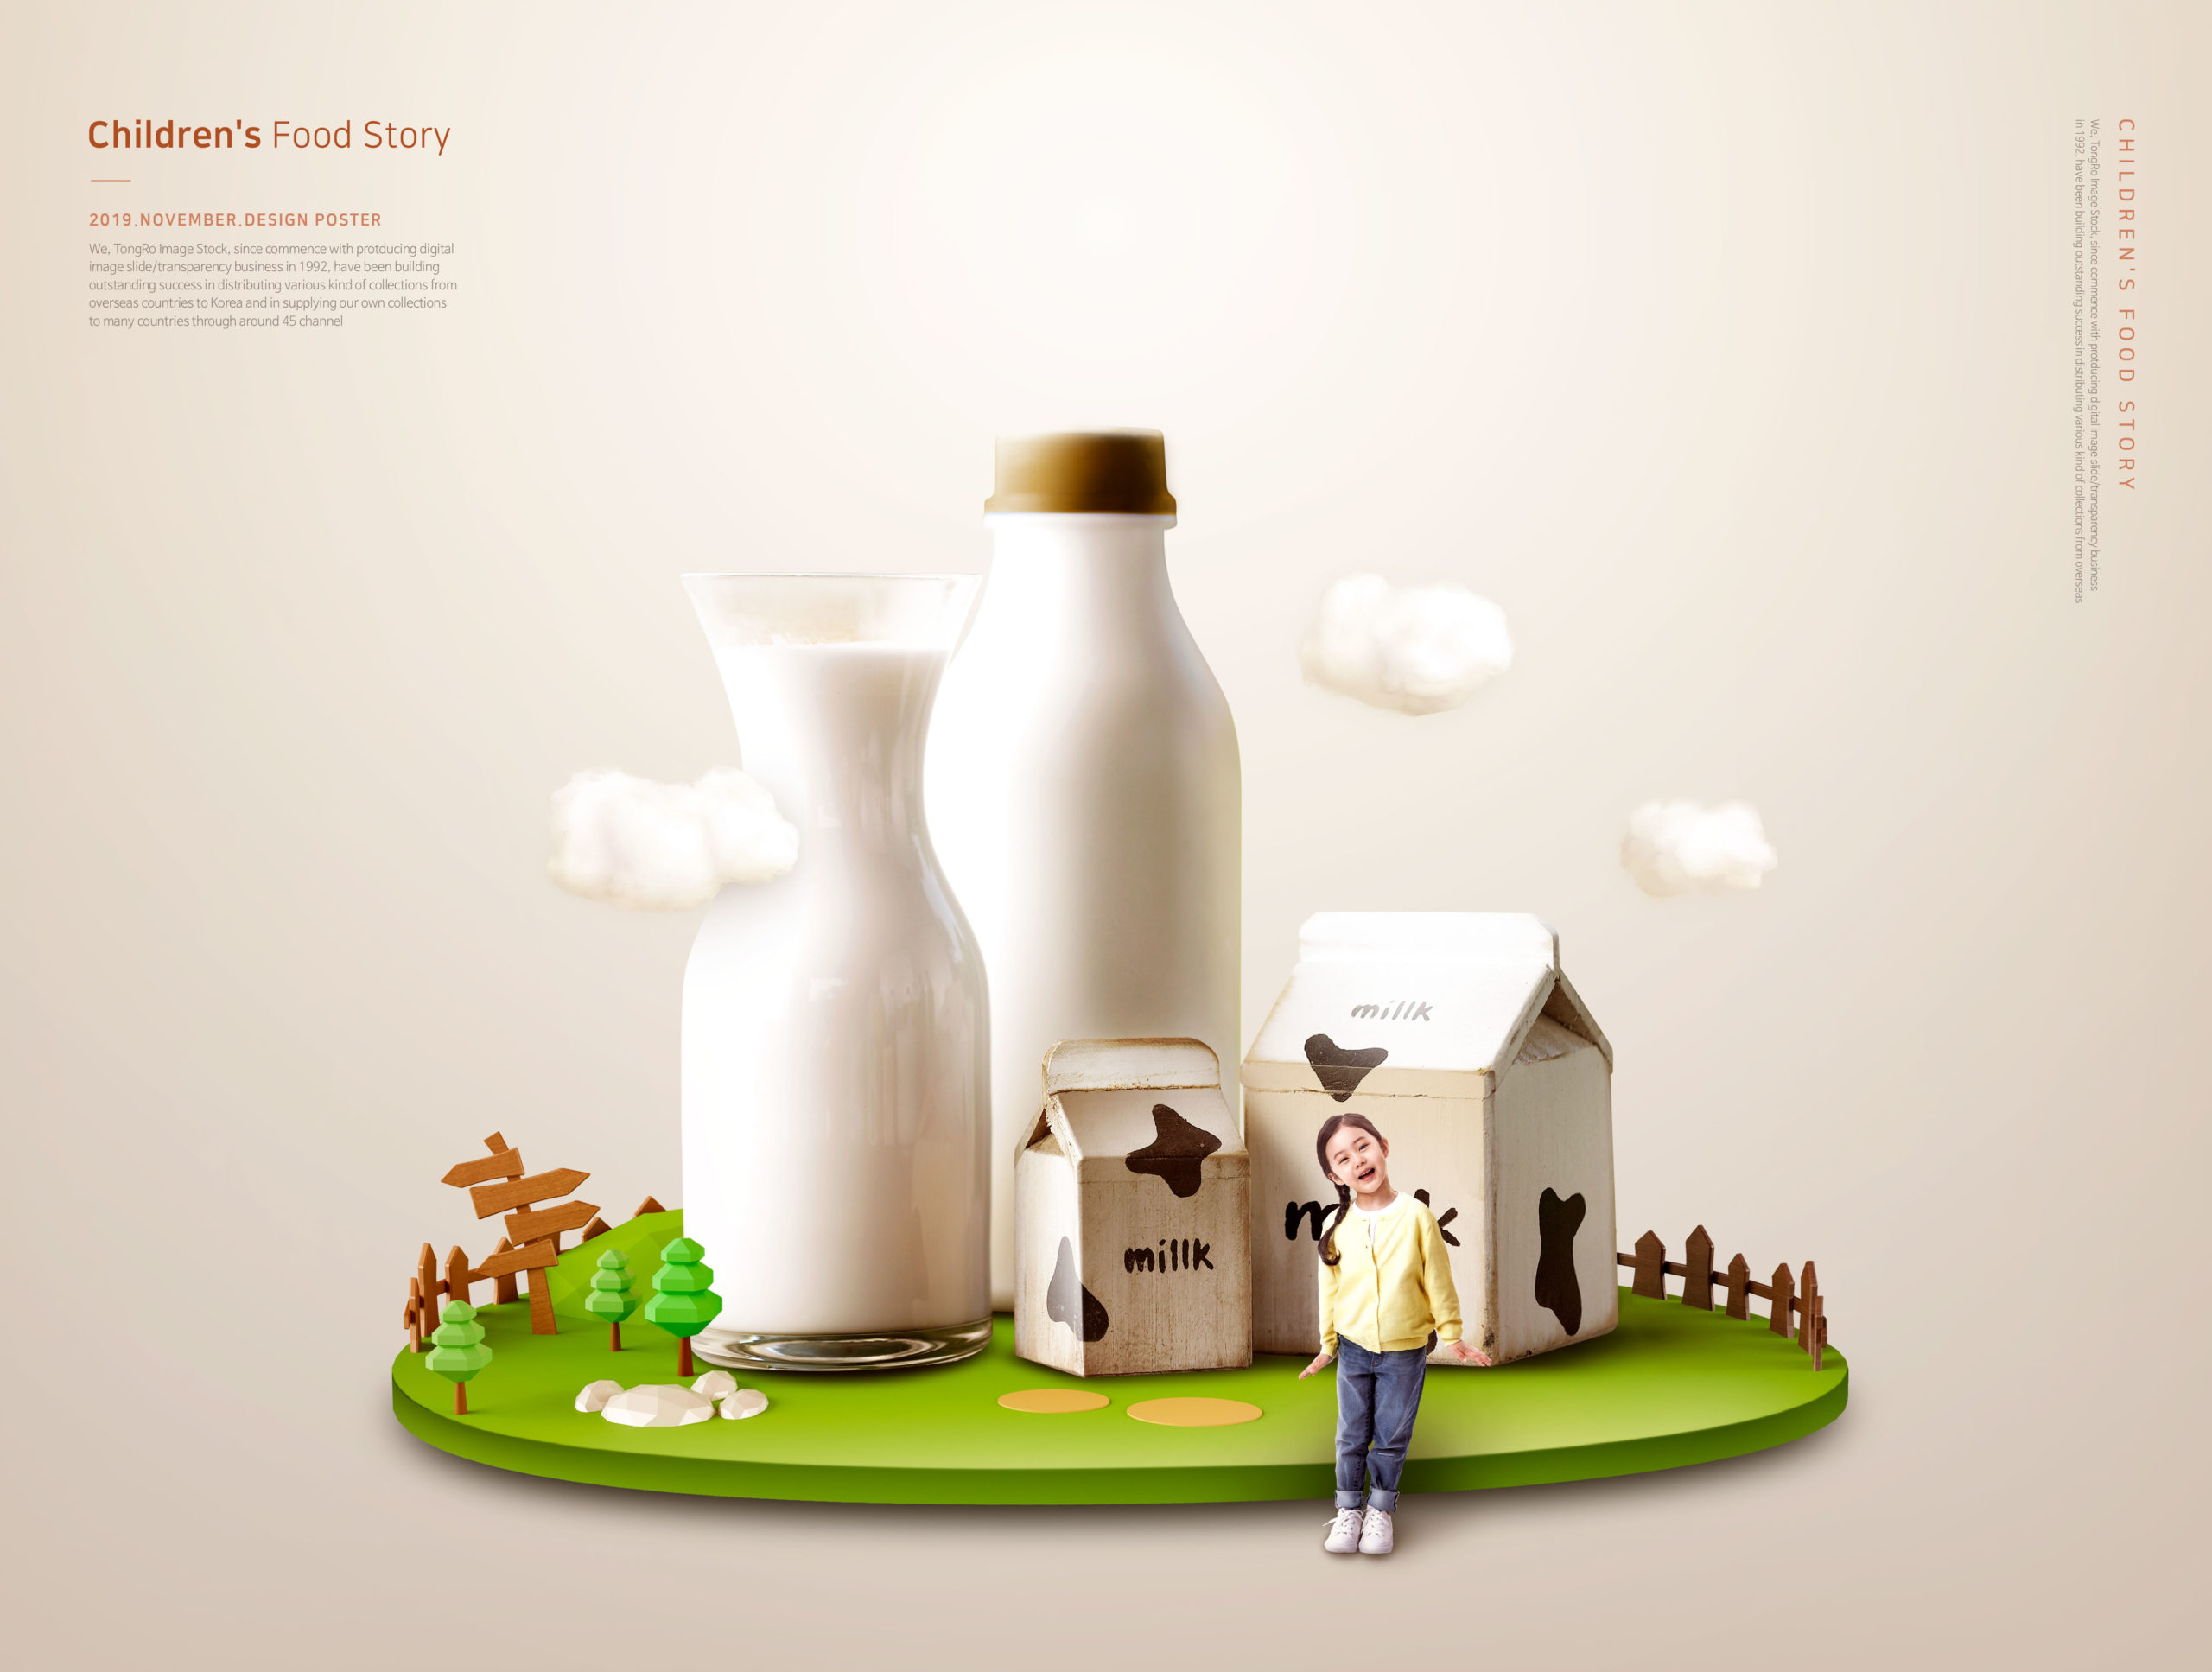 儿童主题牛奶营养饮品宣传海报PSD素材蚂蚁素材精选素材插图